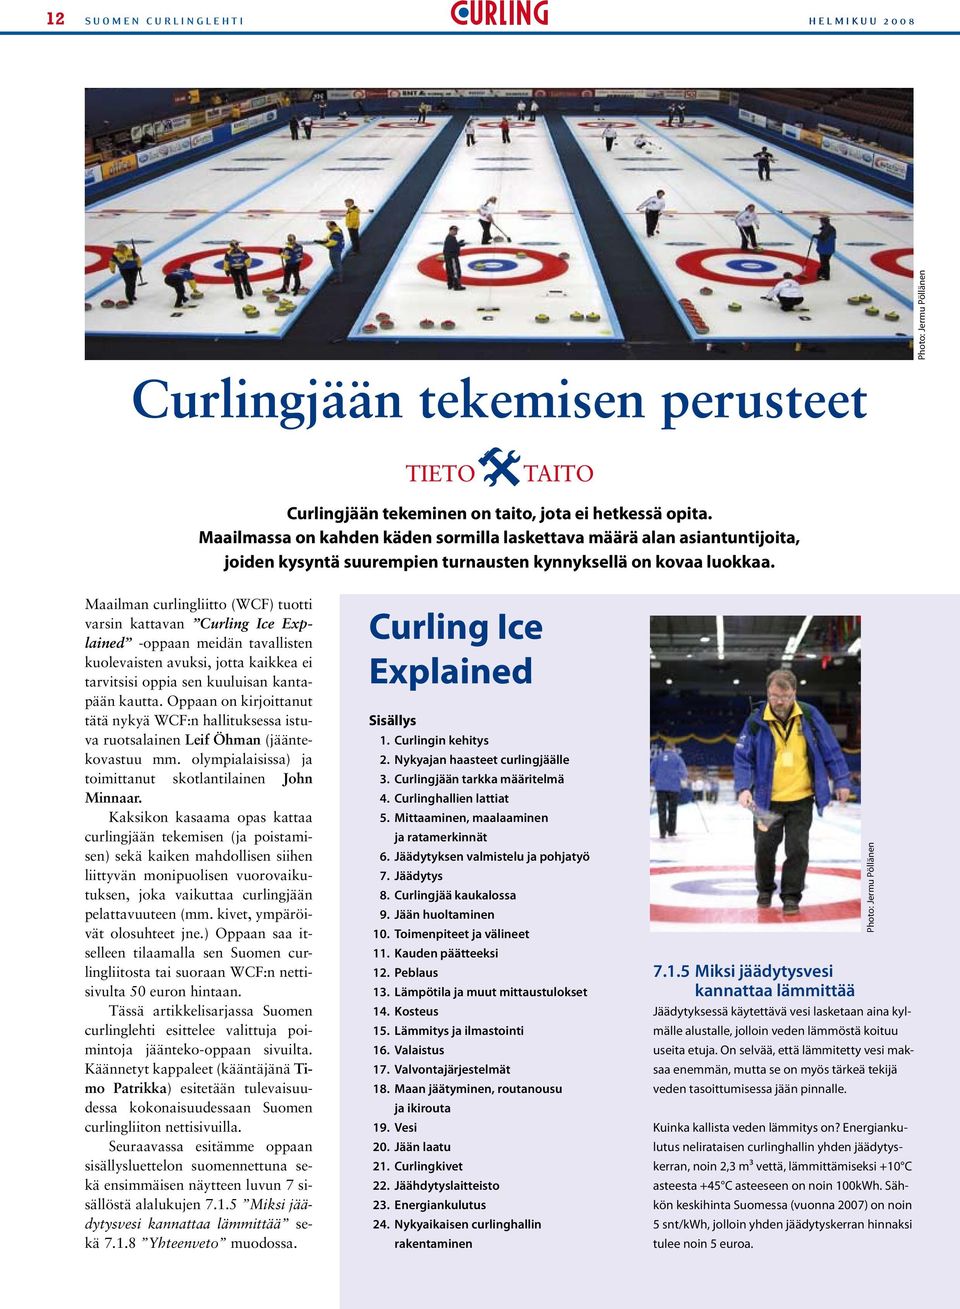 Maailman curlingliitto (WCF) tuotti varsin kattavan Curling Ice Explained -oppaan meidän tavallisten kuolevaisten avuksi, jotta kaikkea ei tarvitsisi oppia sen kuuluisan kantapään kautta.